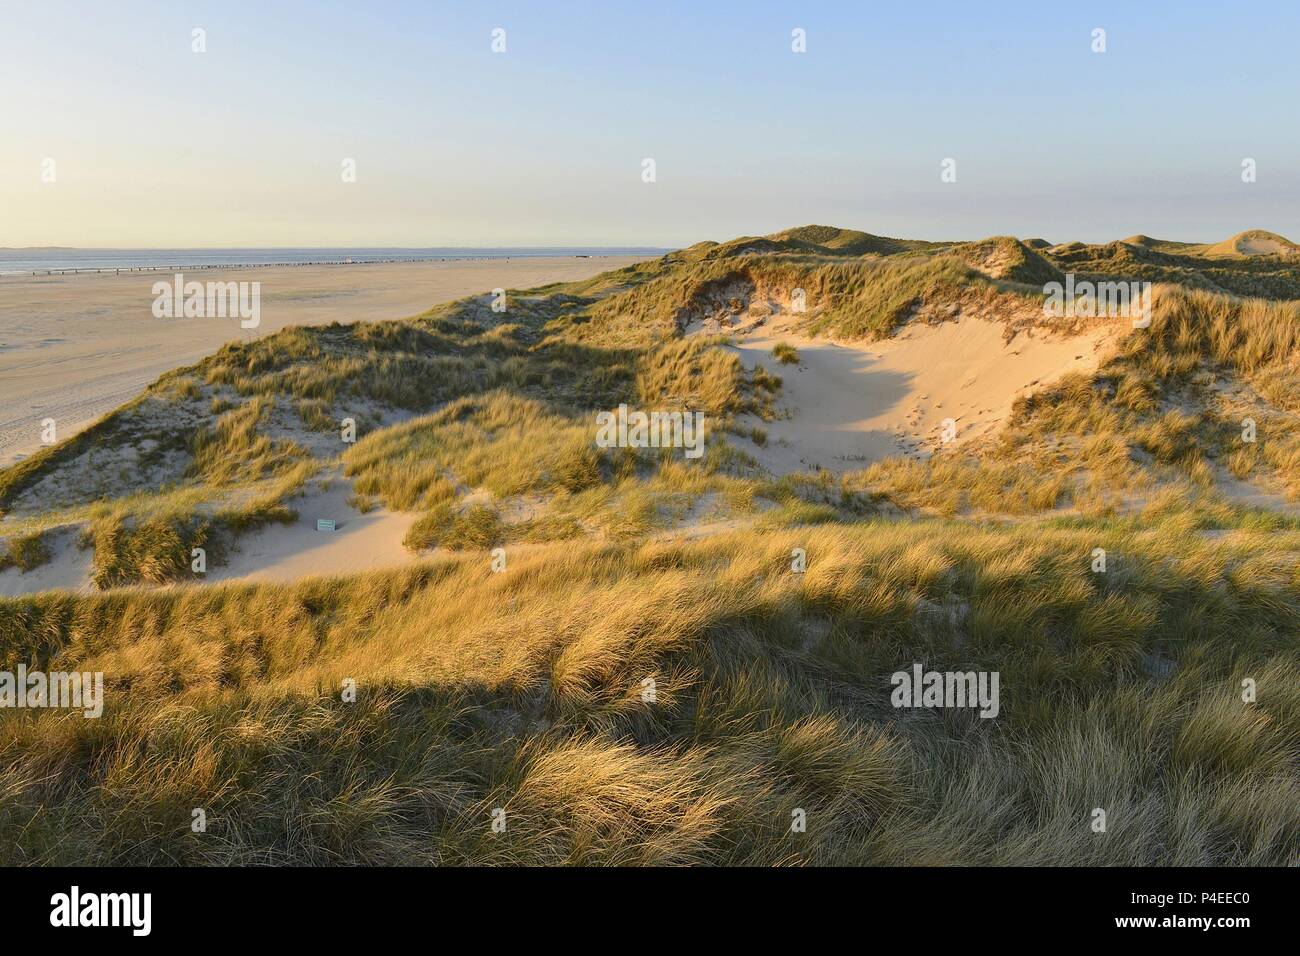 Mächtige Dünengürtel bewachsen mit Gras und den Strand von der Insel Amrum in der Nähe von Norddorf und die Nordsee am Horizont, 11. Mai 2018 | Verwendung weltweit Stockfoto